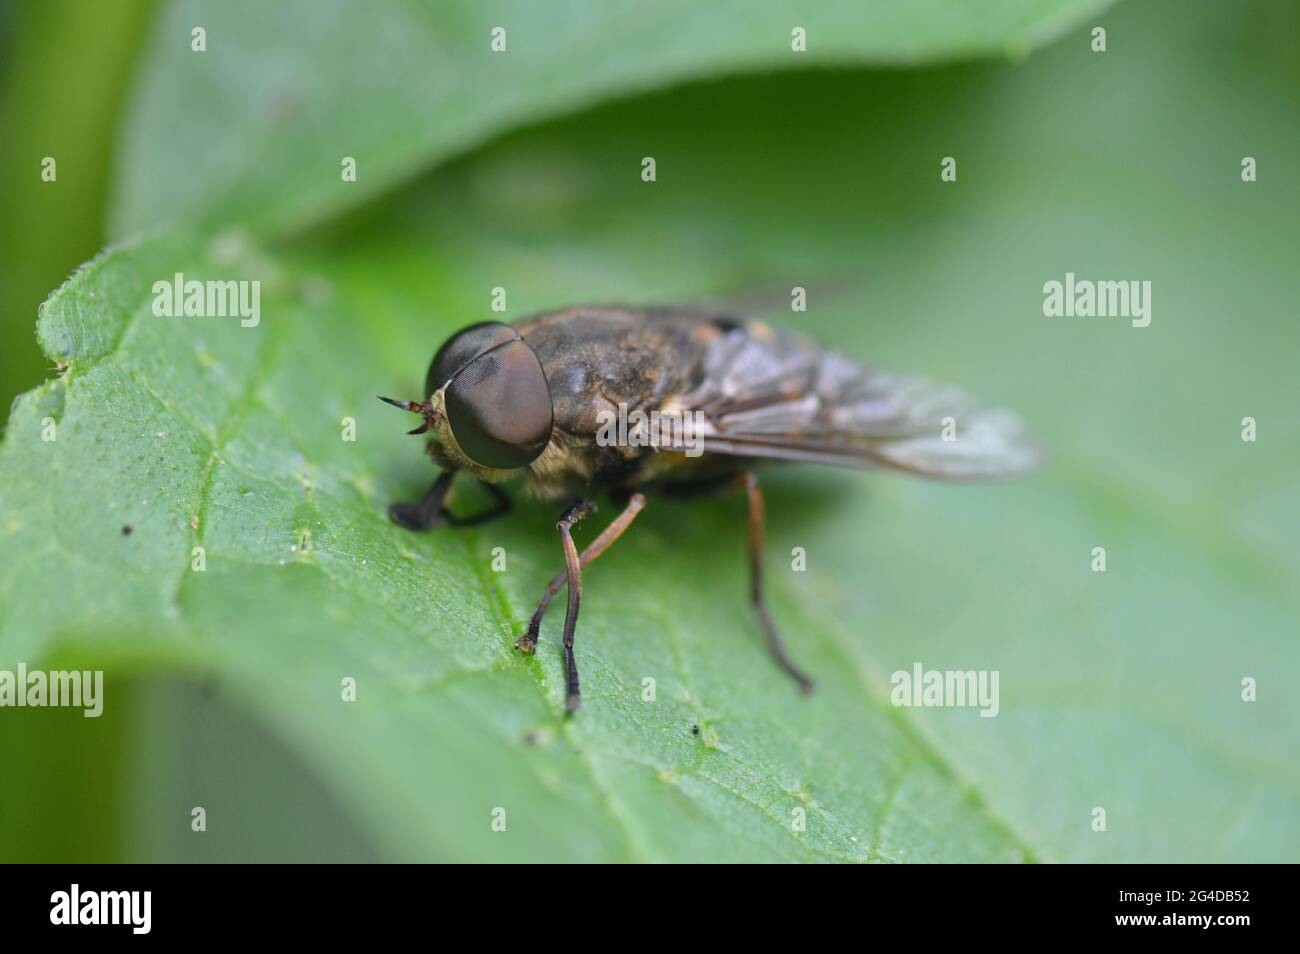 Andrena - Sandbiene - Erdbiene - auf einem Blatt sitzenden vorne links Stock Photo